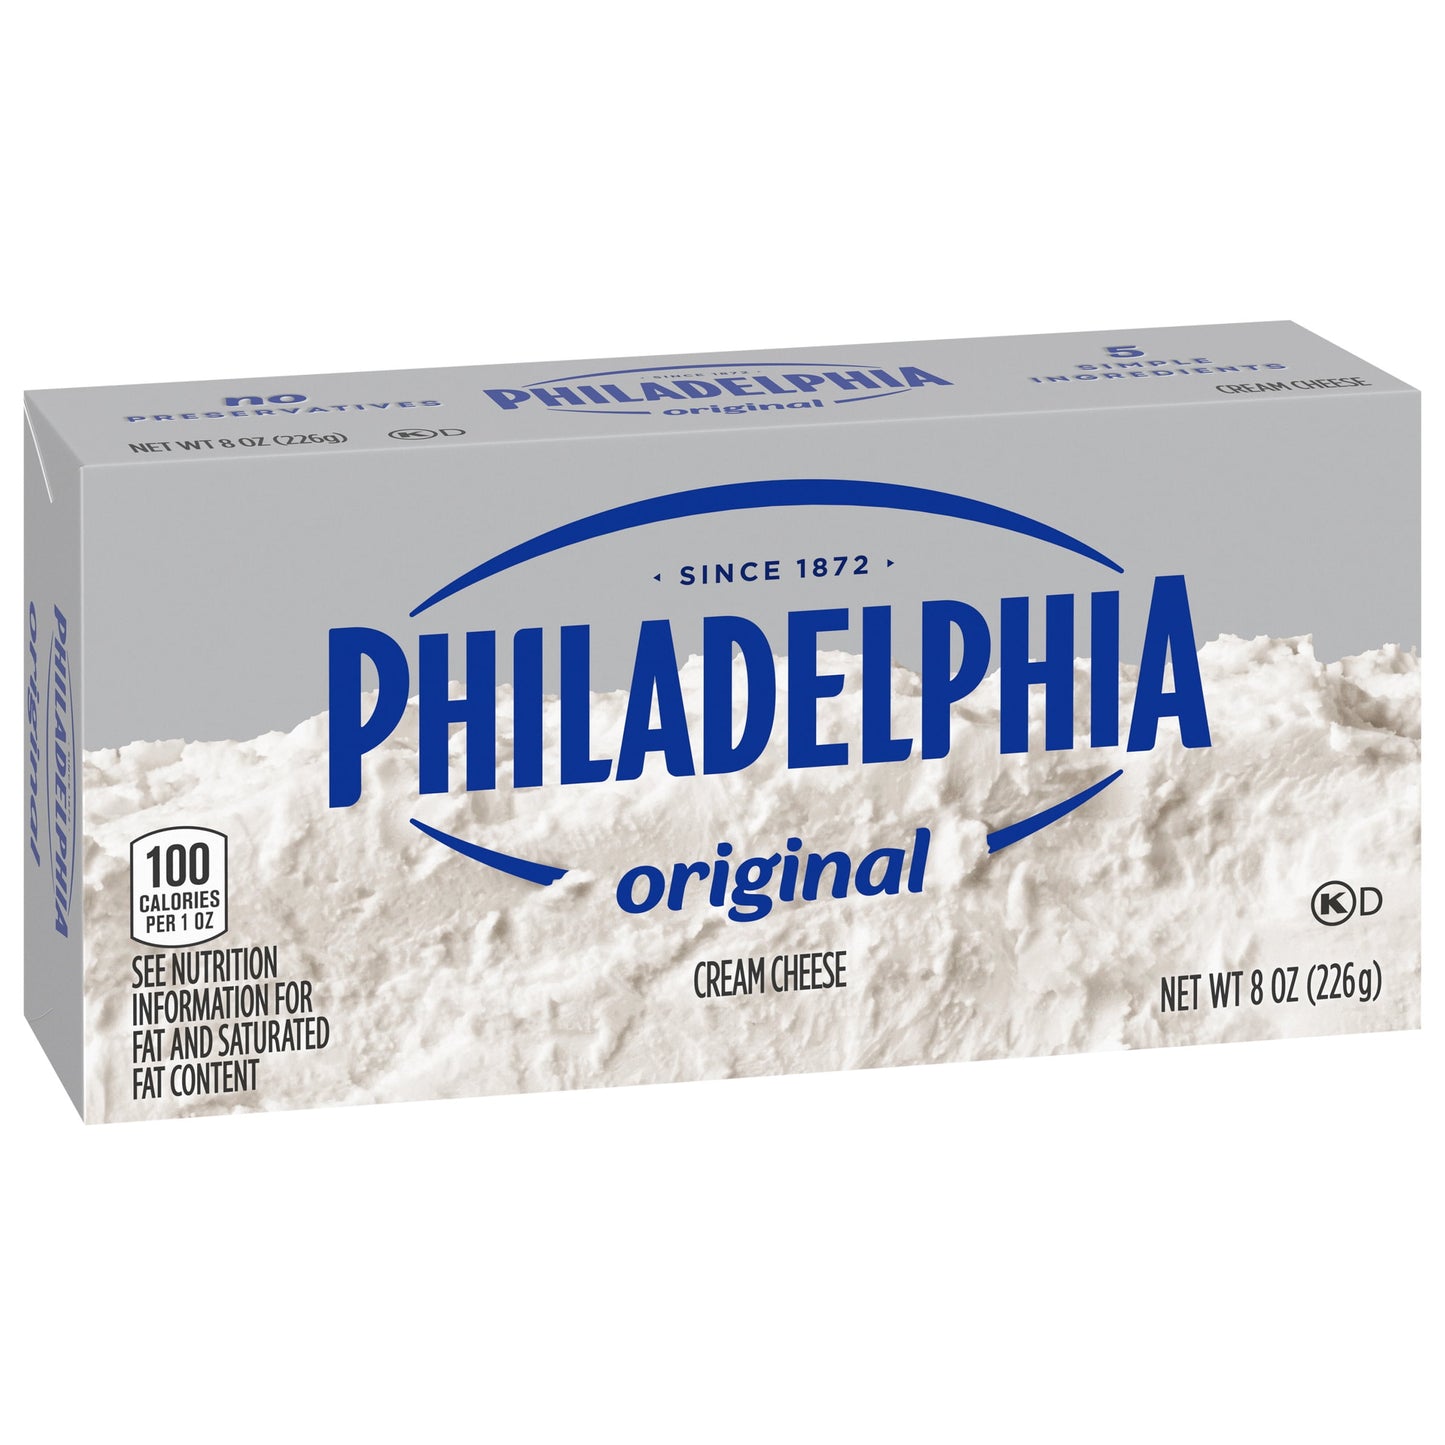 Philadelphia No Preservatives Original Cream Cheese, 8 oz